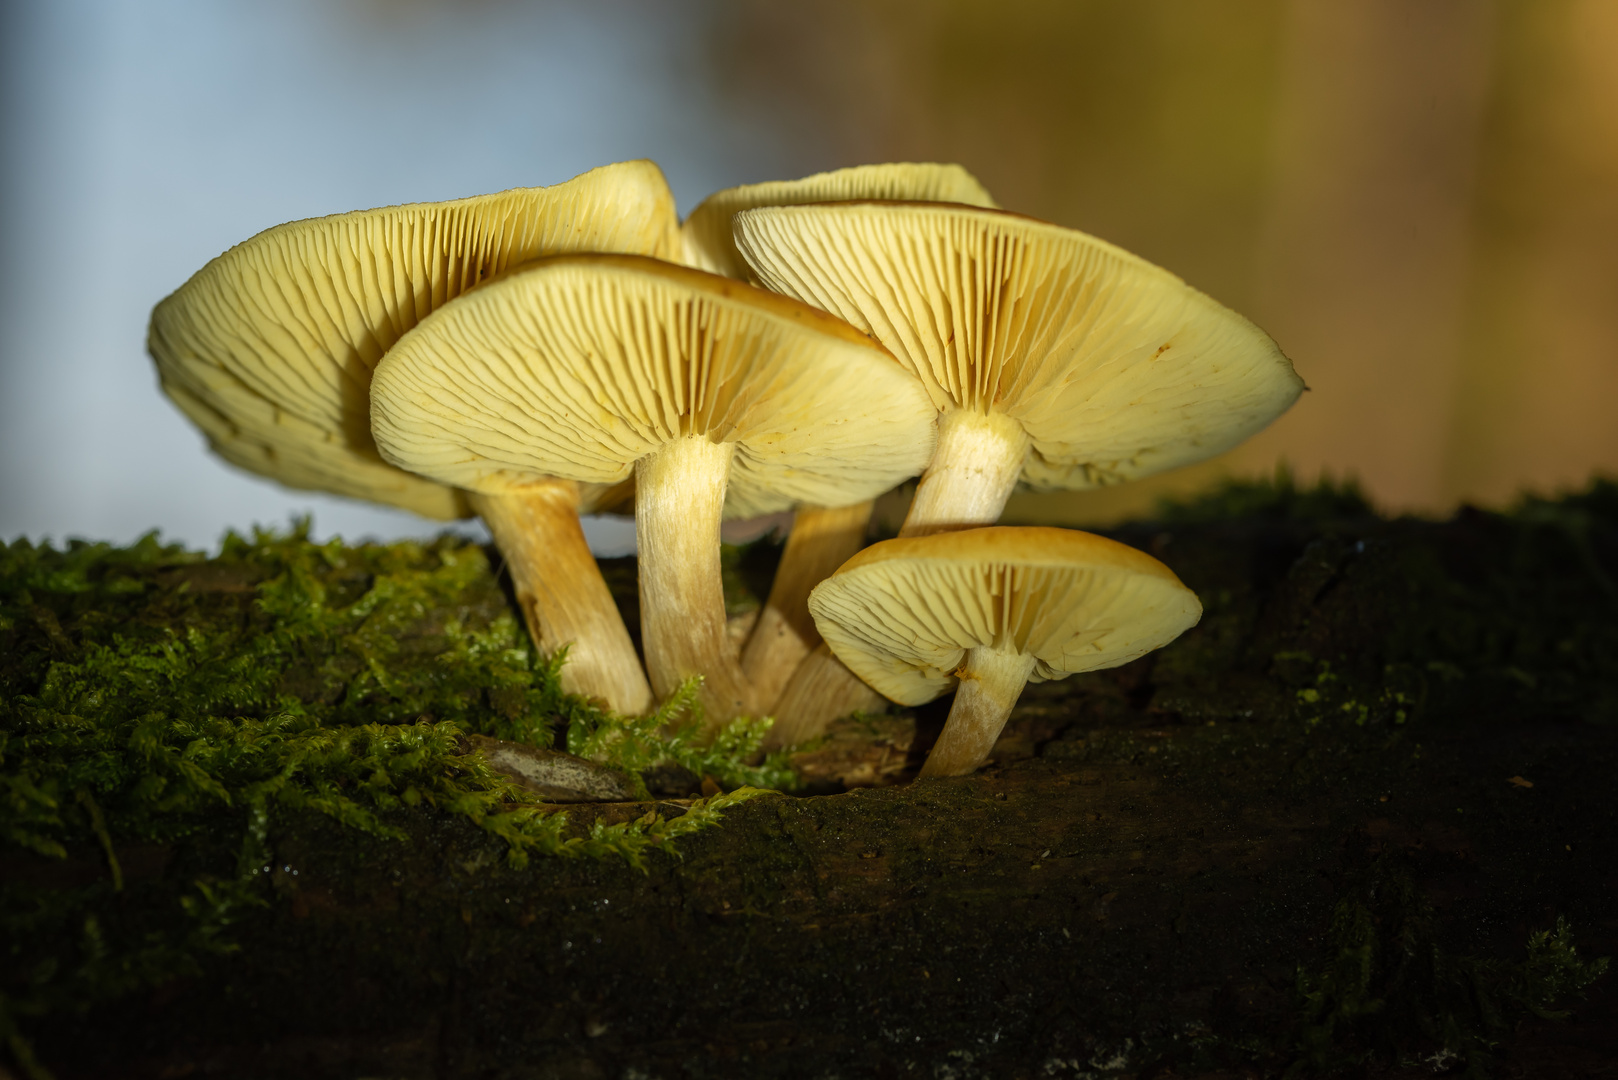 Pilze auf einem morschen Baumstamm